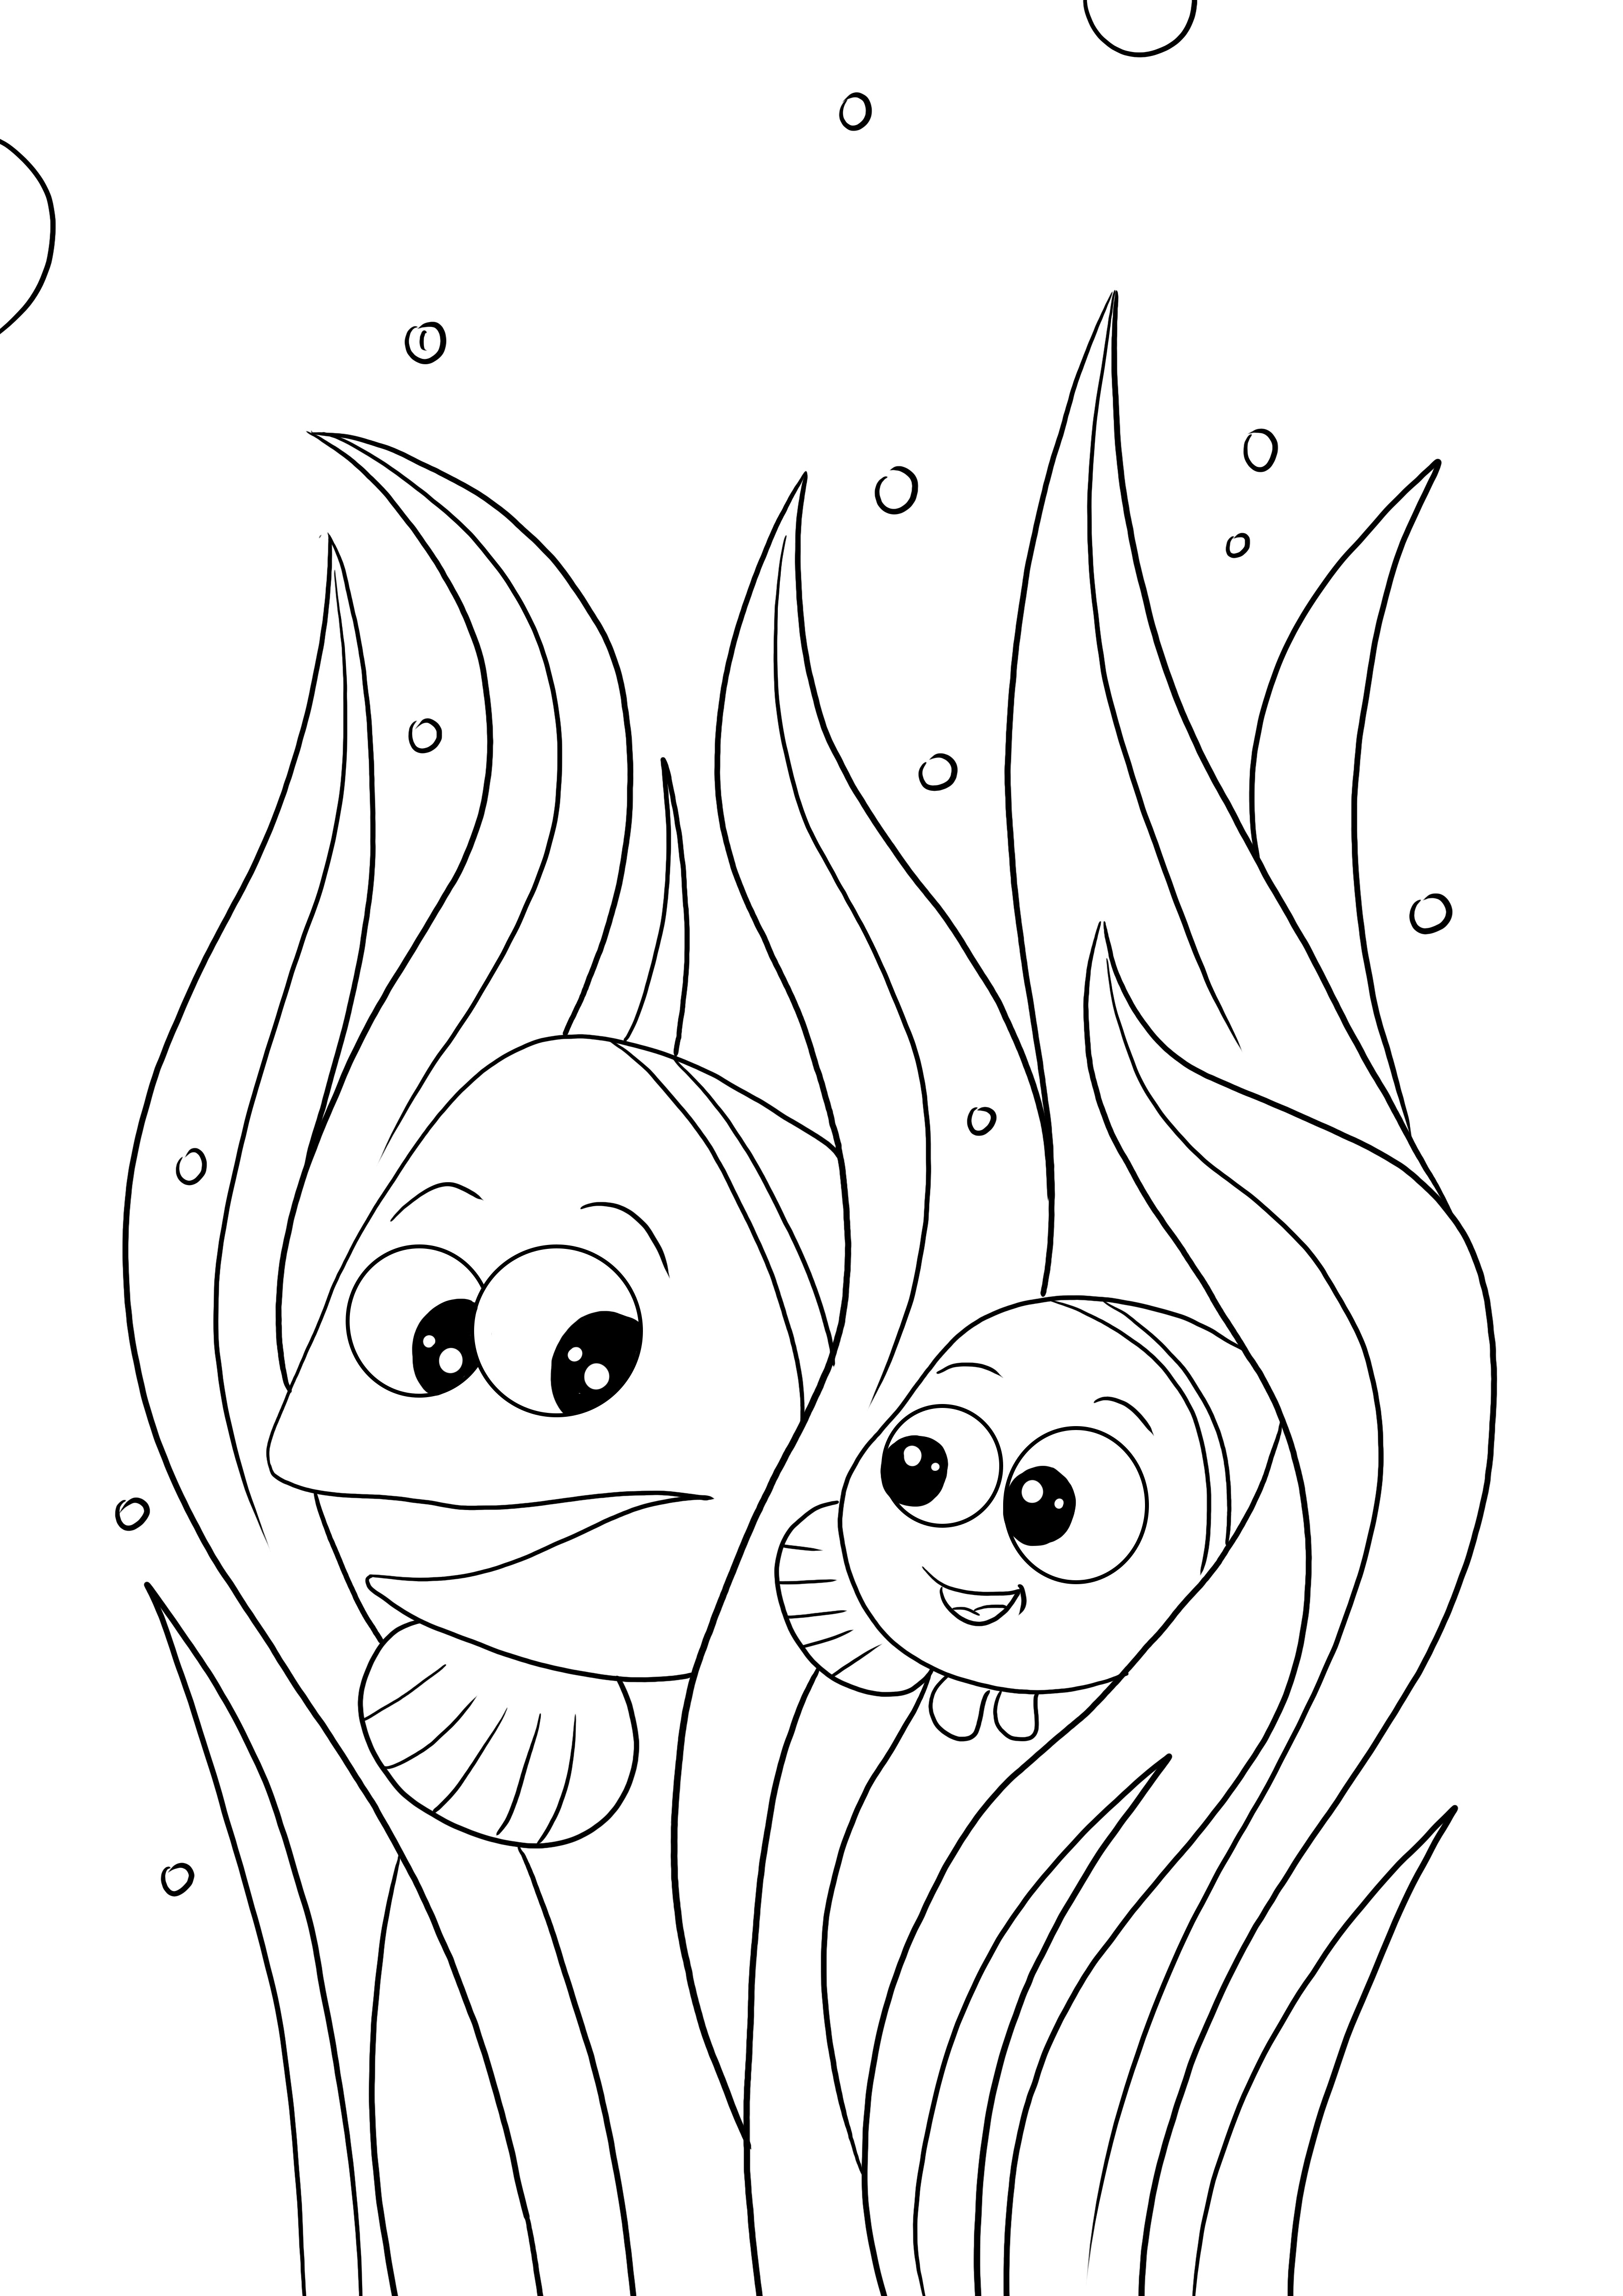 Marlin és Nemo ingyenes színező és nyomdaoldal minden korosztály számára